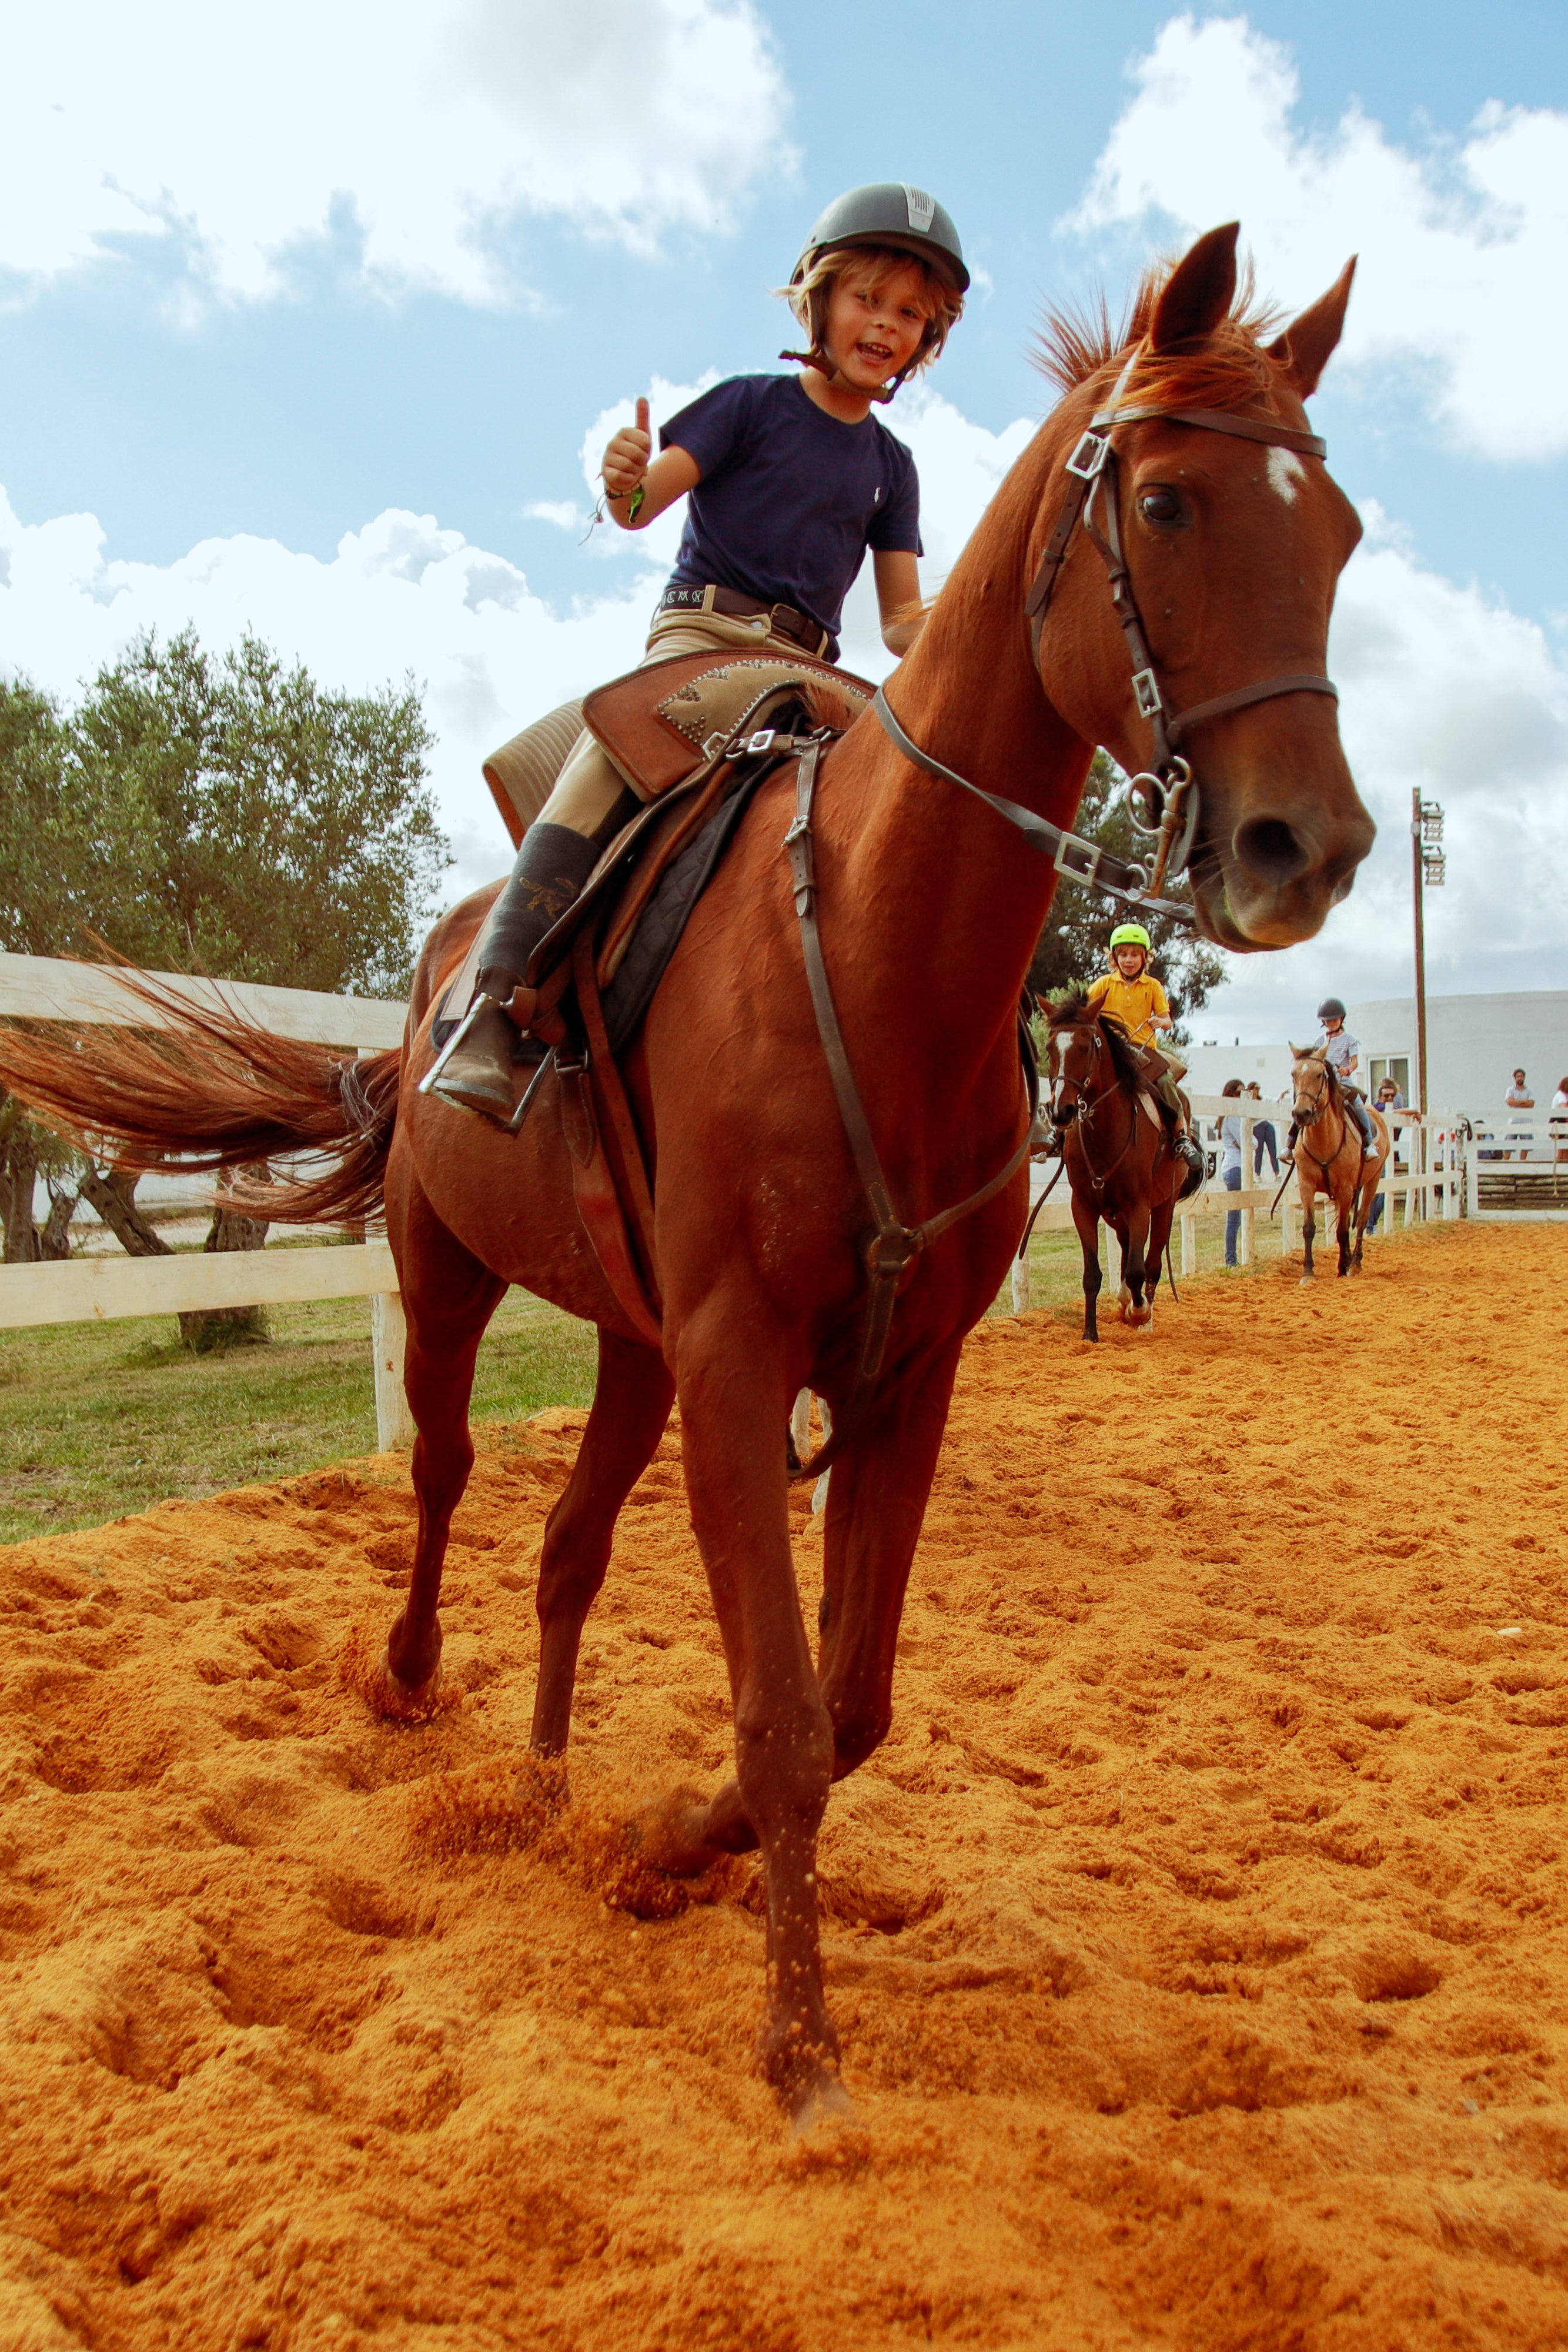 Caixa - Oferta • Jogo Cavalo em Linha + Batismo Equestre – Andar a cavalo